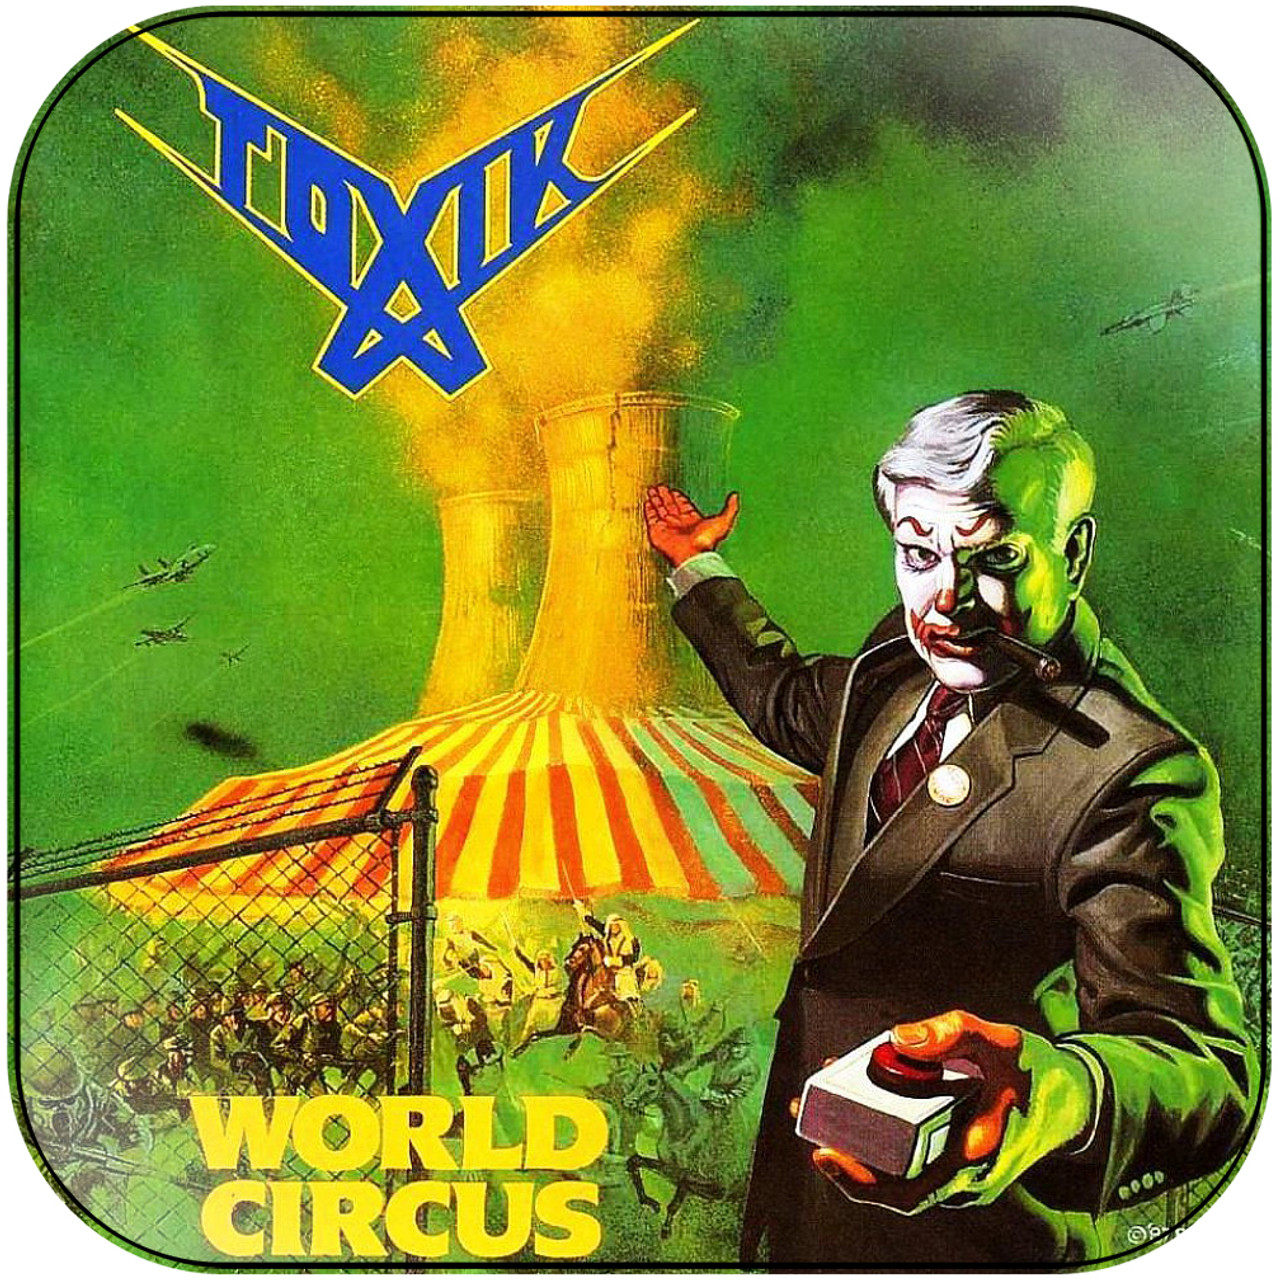 Toxik World Circus Album Cover Sticker